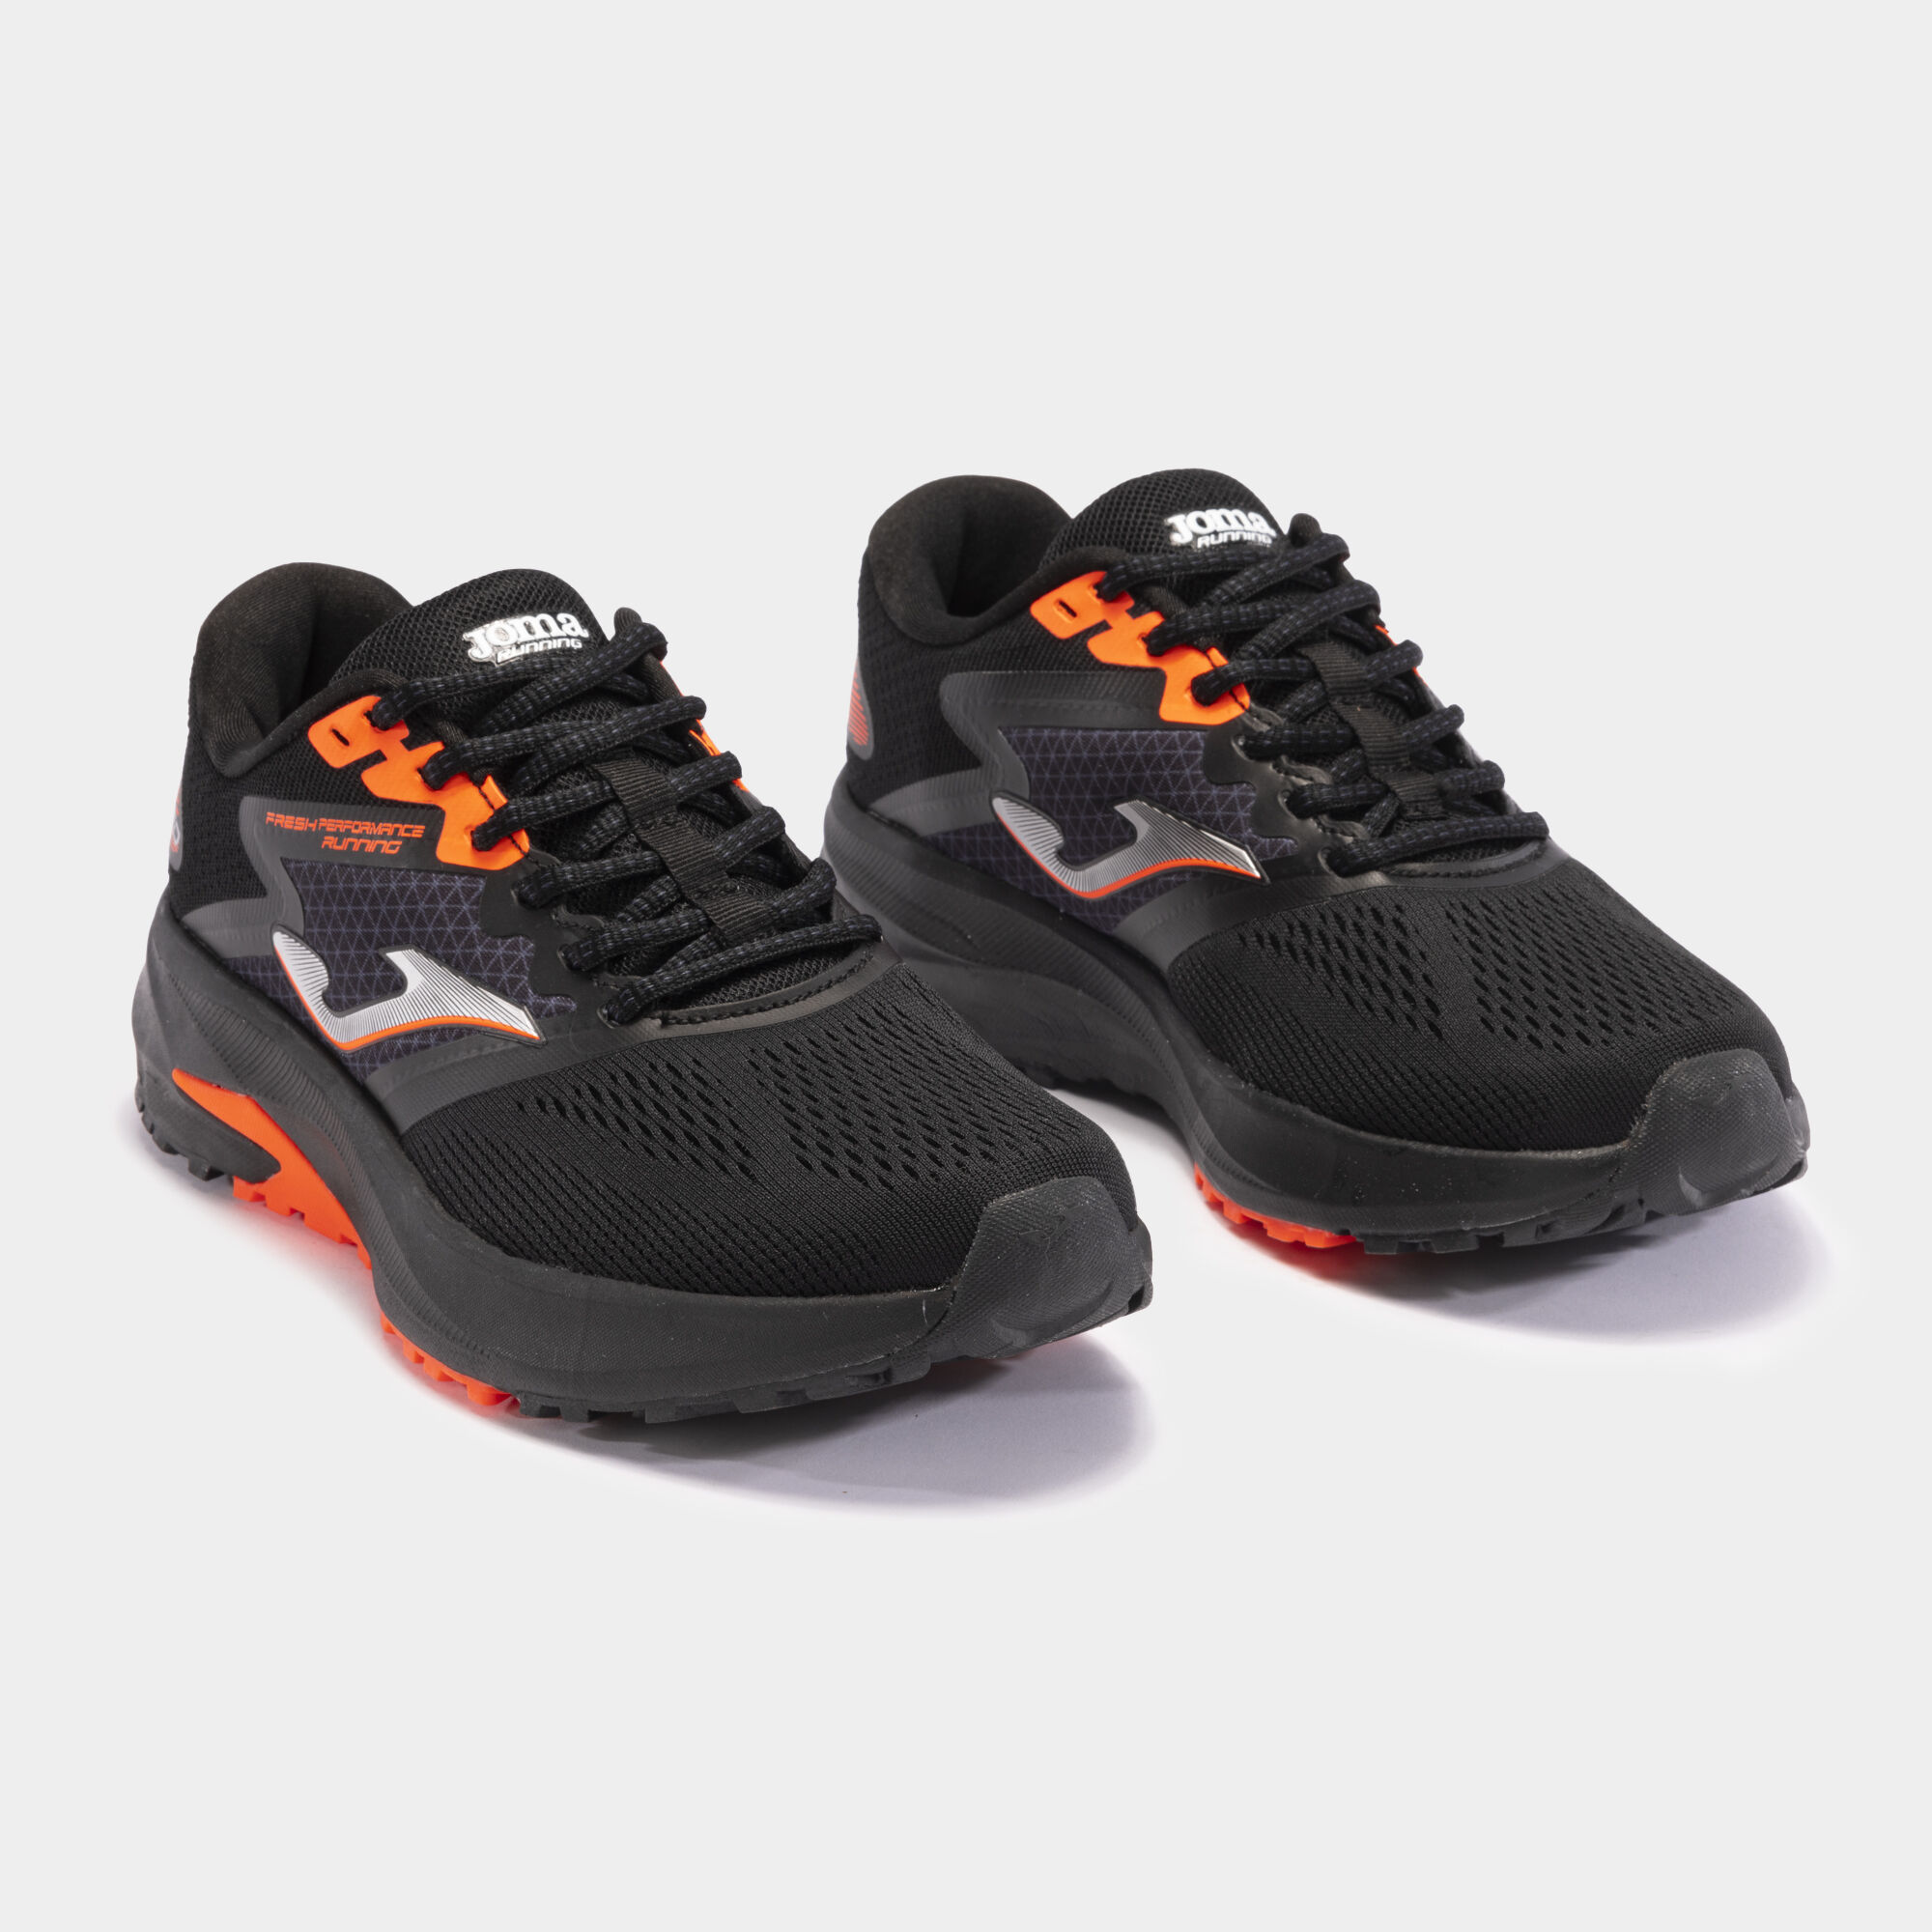 Chaussures running Speed 24 homme noir orange